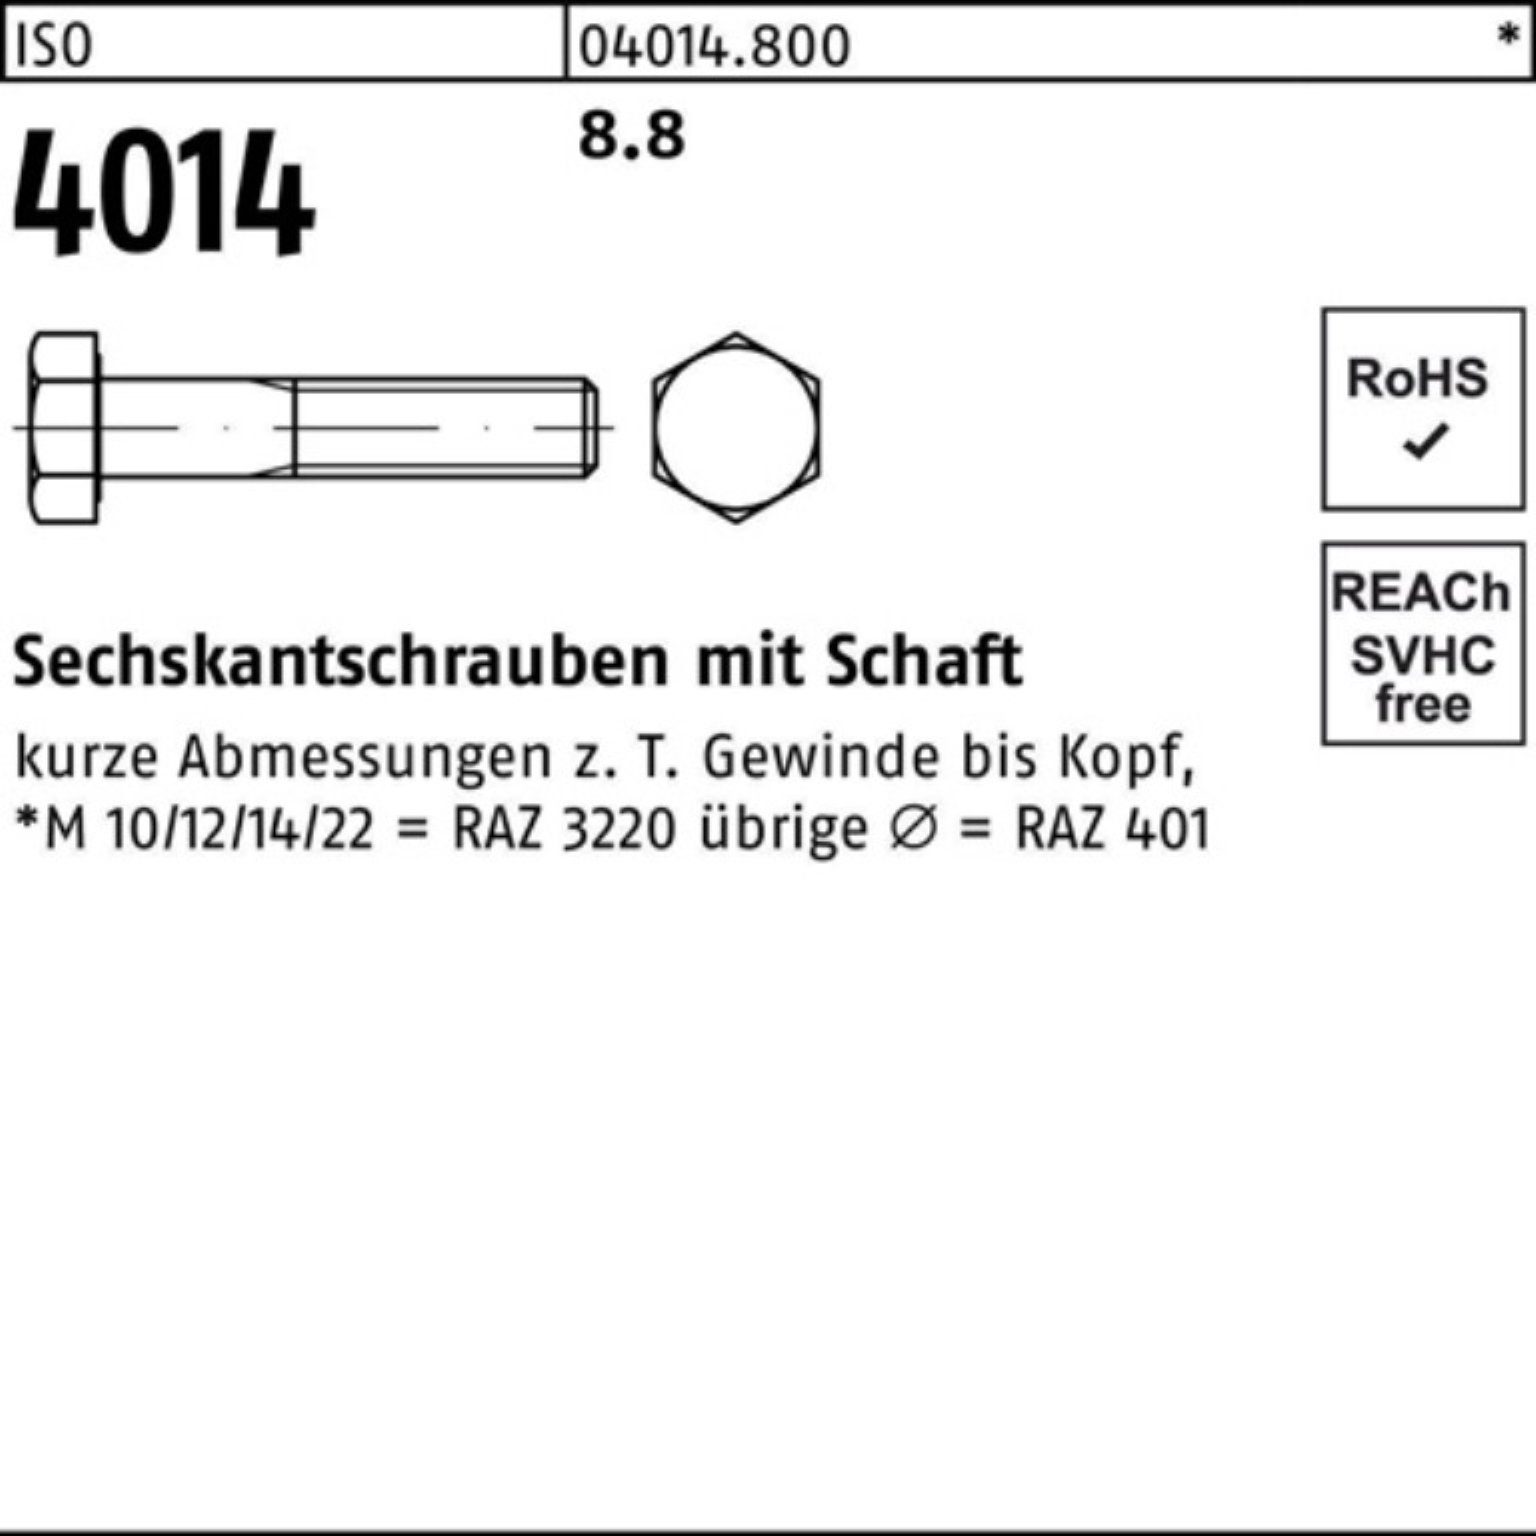 IS M10x Sechskantschraube Bufab 8.8 100er Sechskantschraube 300 Pack Schaft Stück 4014 ISO 50